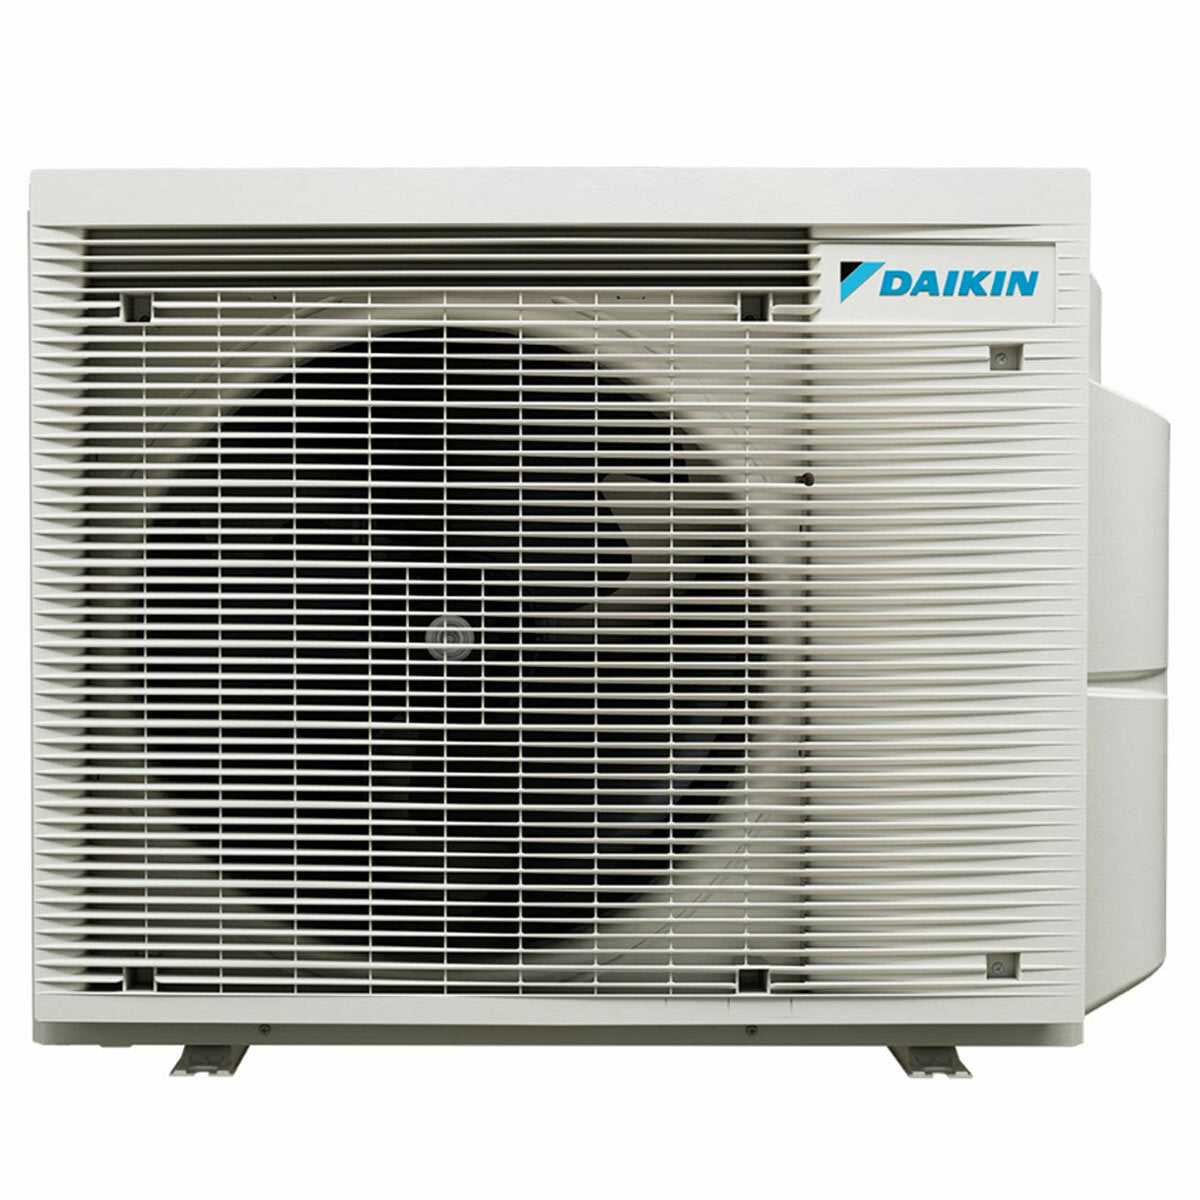 Daikin Emura 3 trial split air conditioner 9000+12000+18000 BTU inverter A+ wifi outdoor unit 6.8 kW Black